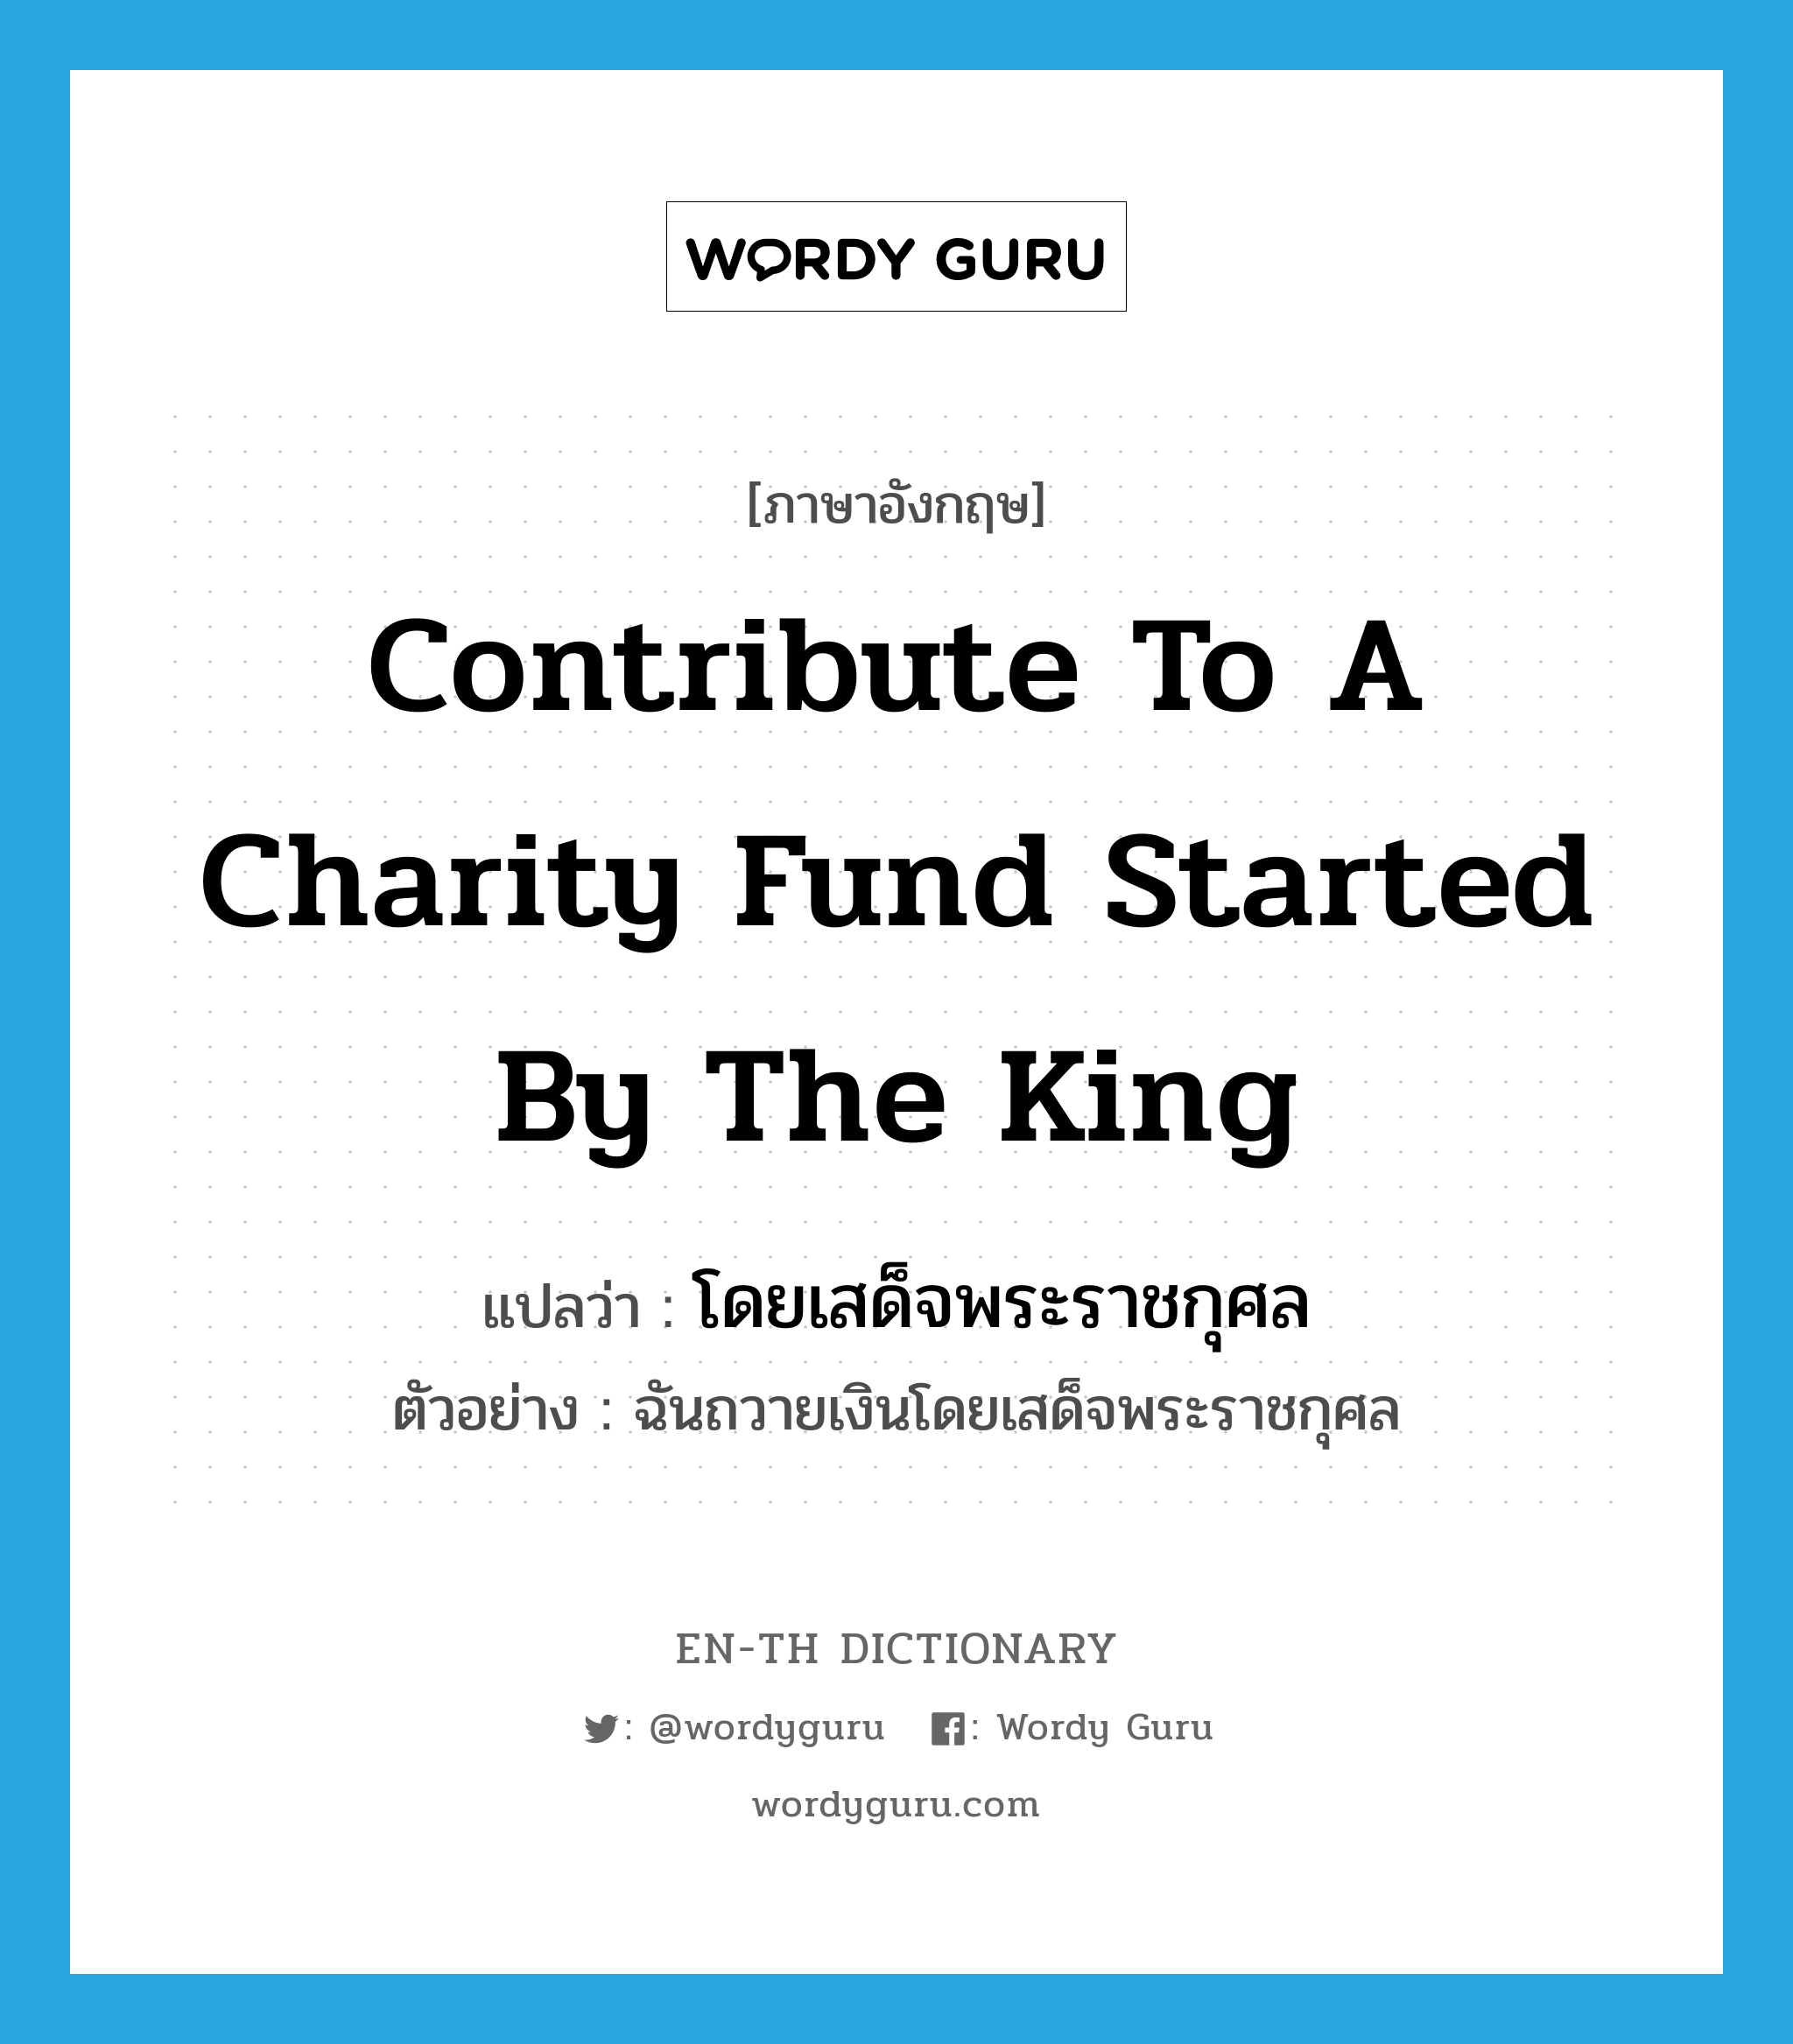 โดยเสด็จพระราชกุศล ภาษาอังกฤษ?, คำศัพท์ภาษาอังกฤษ โดยเสด็จพระราชกุศล แปลว่า contribute to a charity fund started by the king ประเภท ADV ตัวอย่าง ฉันถวายเงินโดยเสด็จพระราชกุศล หมวด ADV